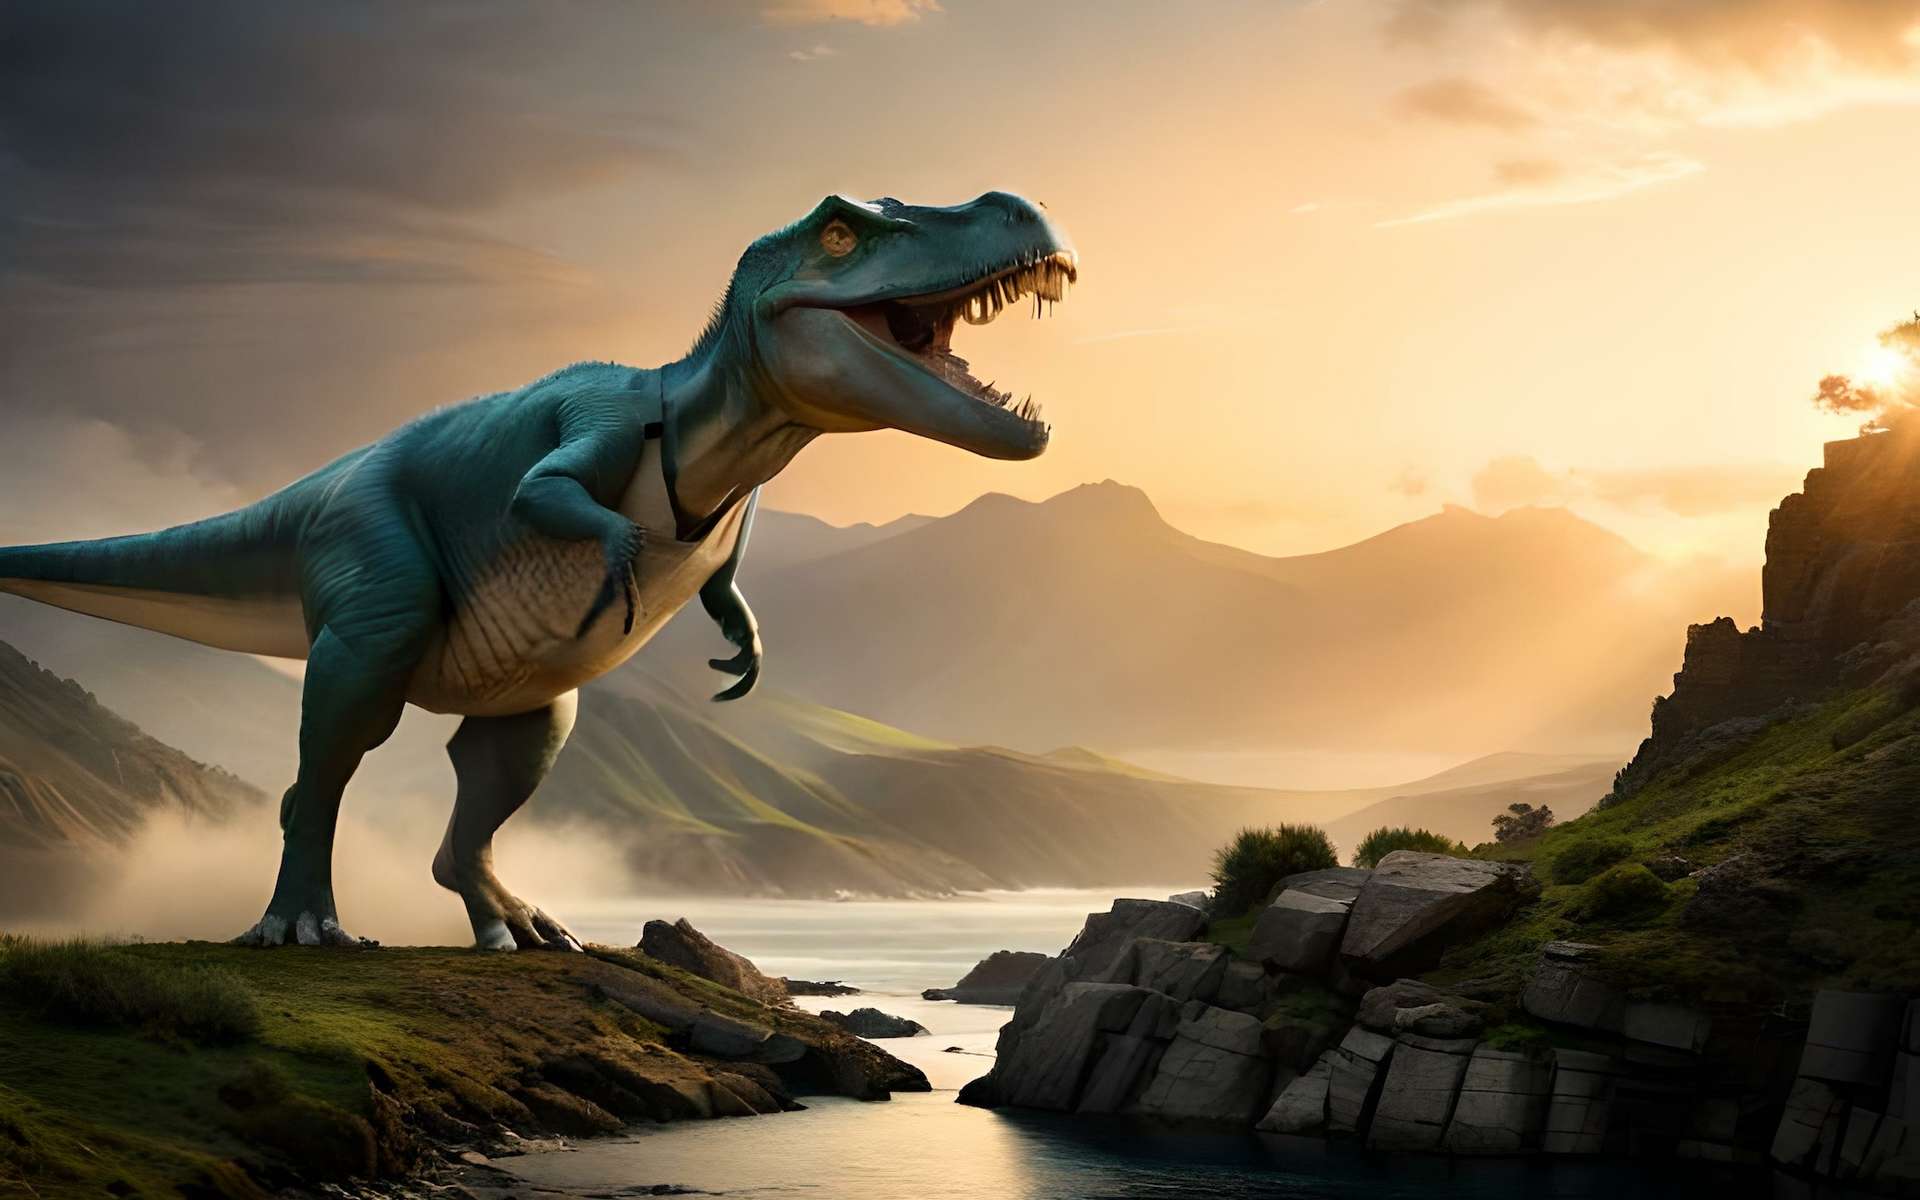 Ces jeunes T-Rex seraient en fait une autre espèce de tyrannosaure nain